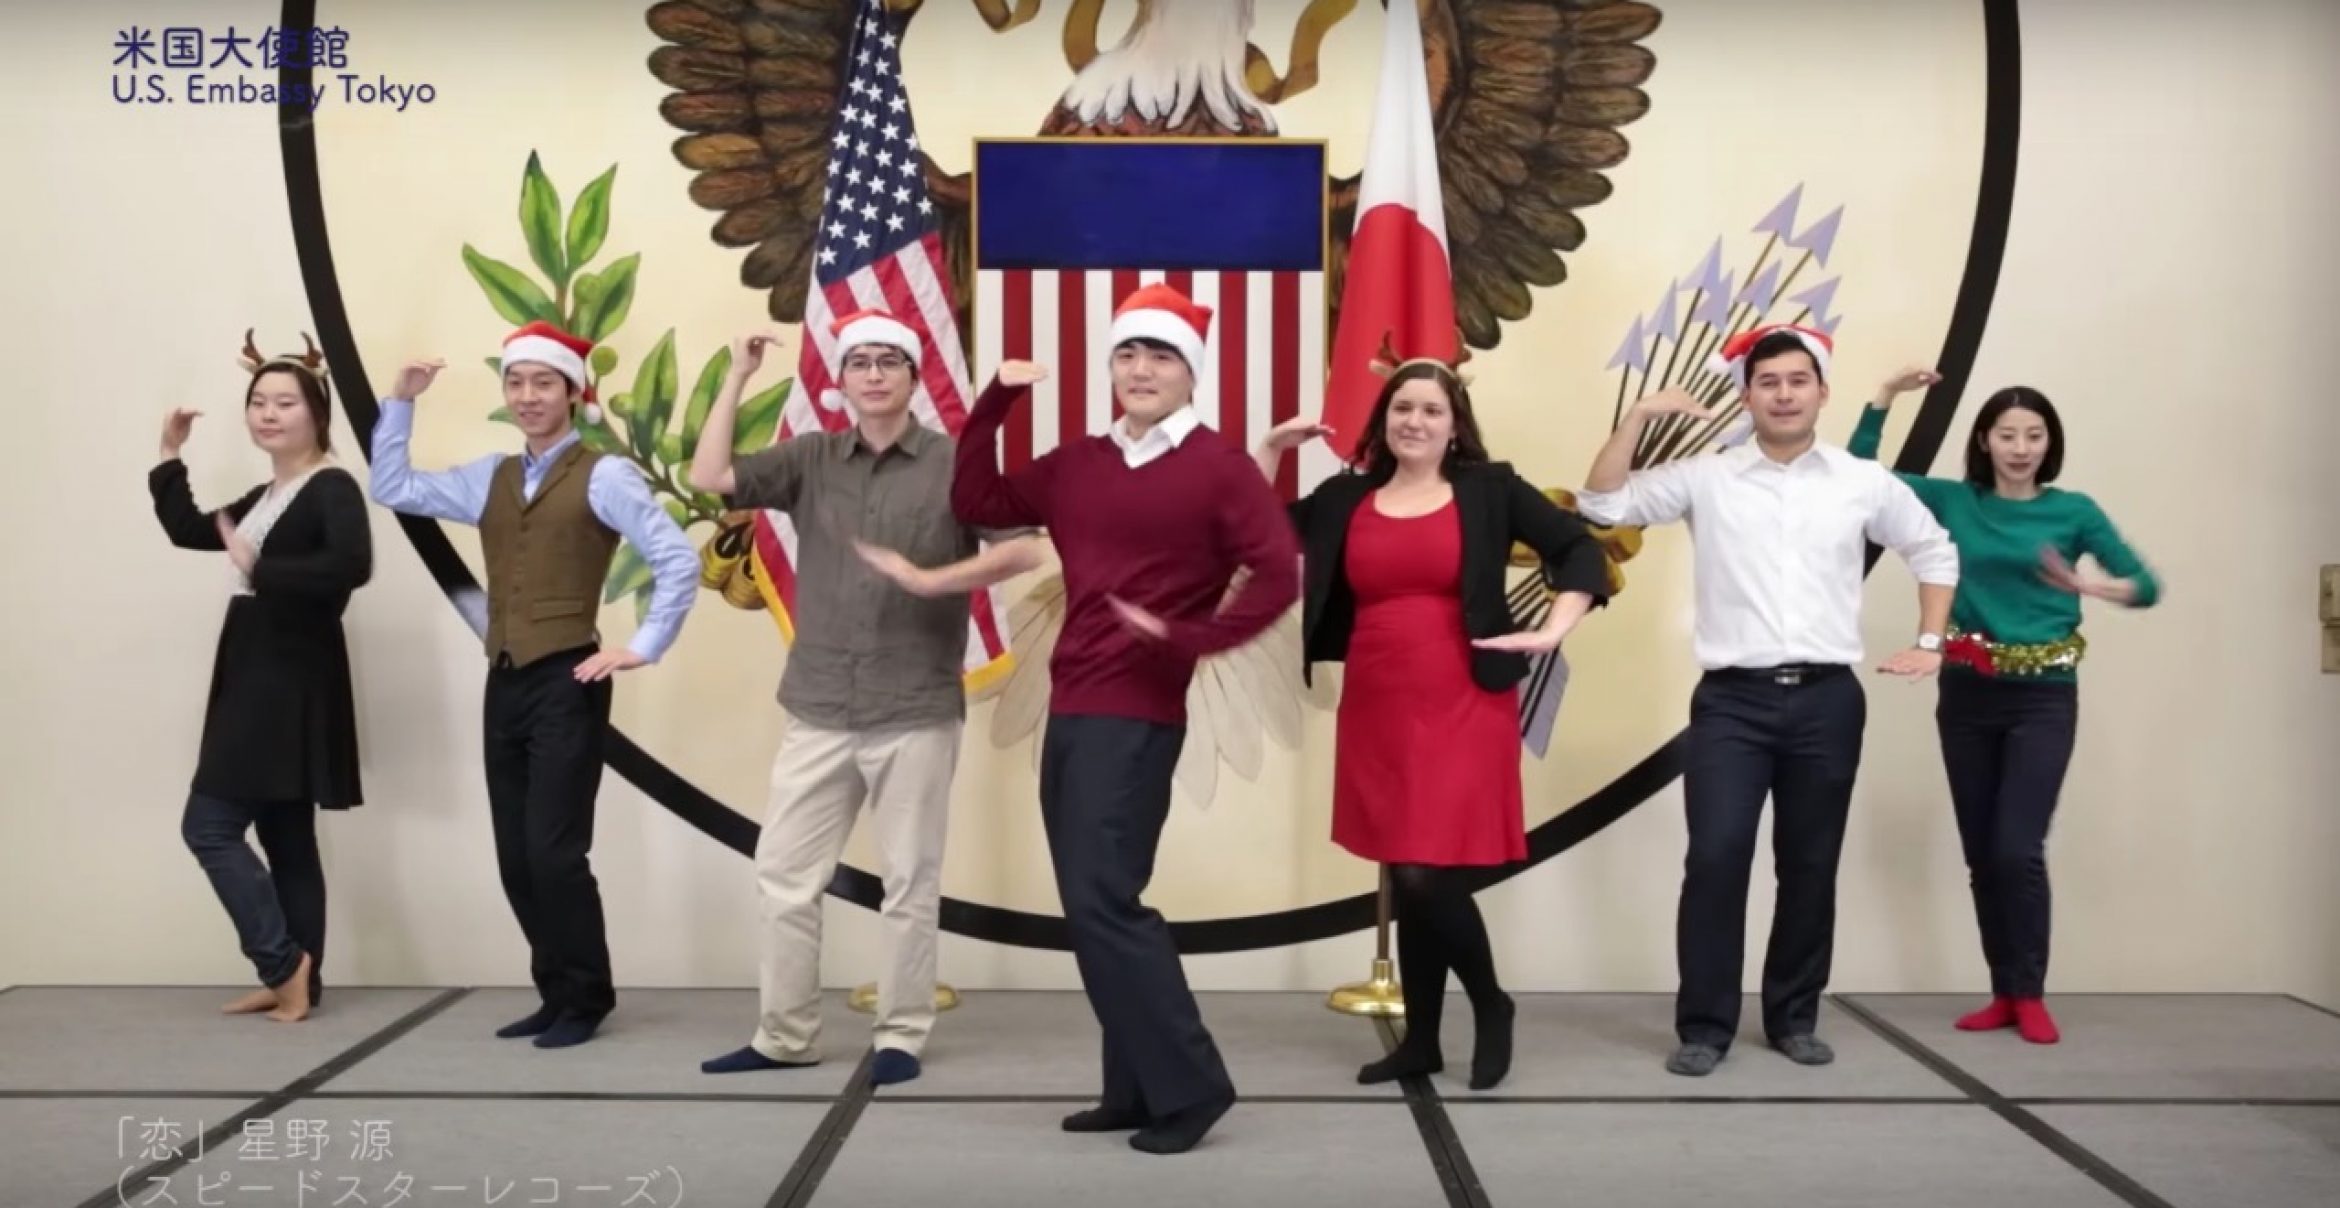 Weihnachtsgrüße: US-Botschaft in Japan dreht Weihnachtsvideo – und wird zum Viral-Hit